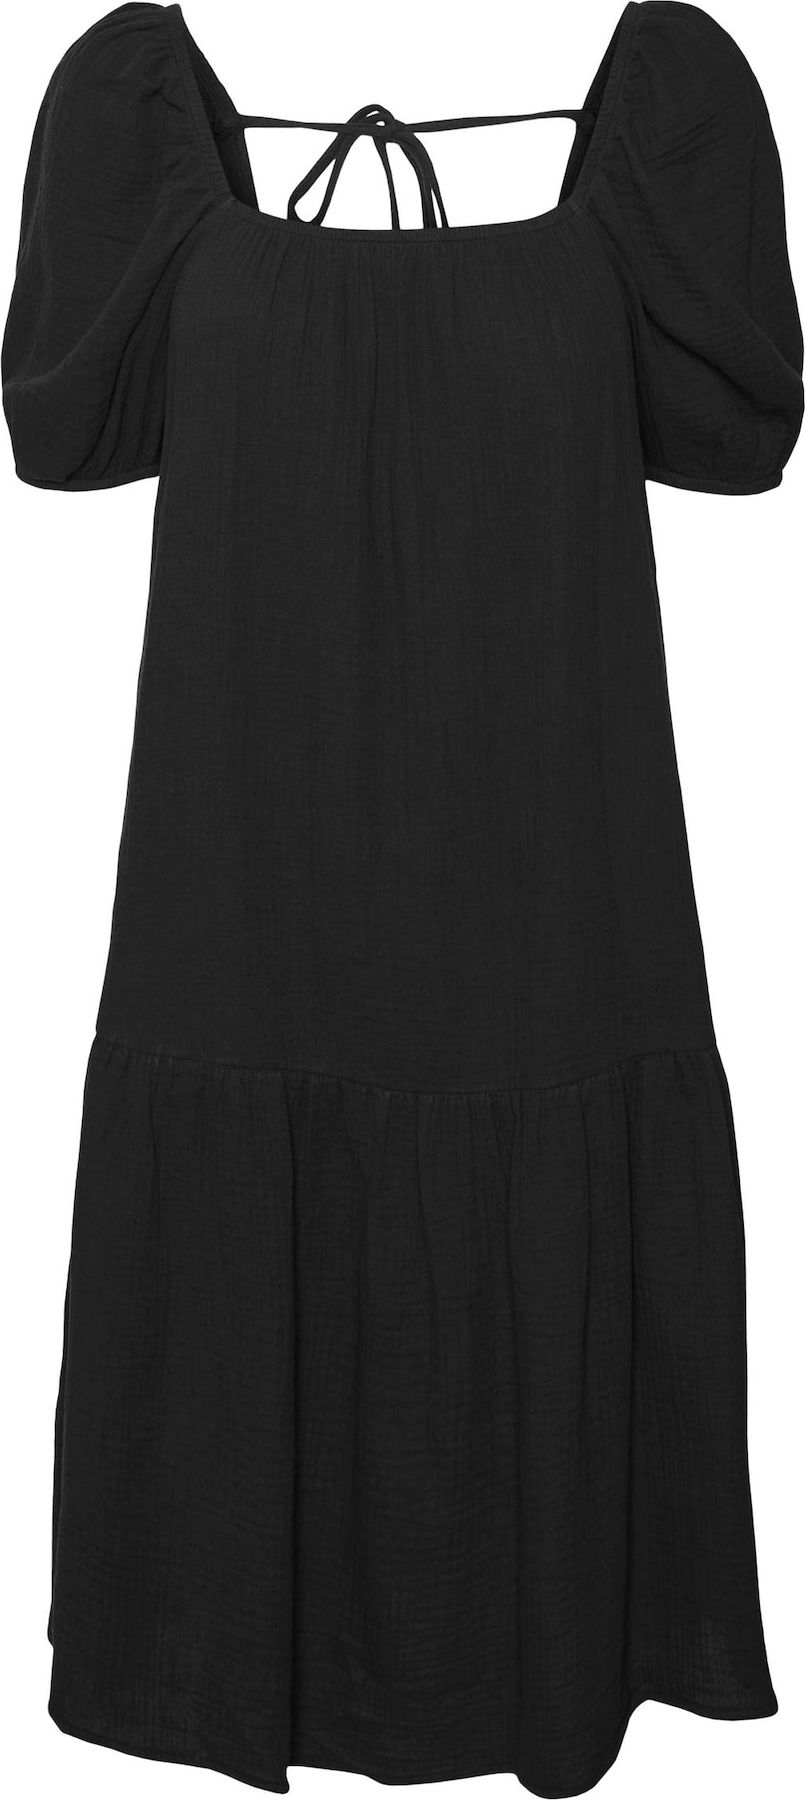 Letní šaty 'Natali Nia' Vero Moda černá